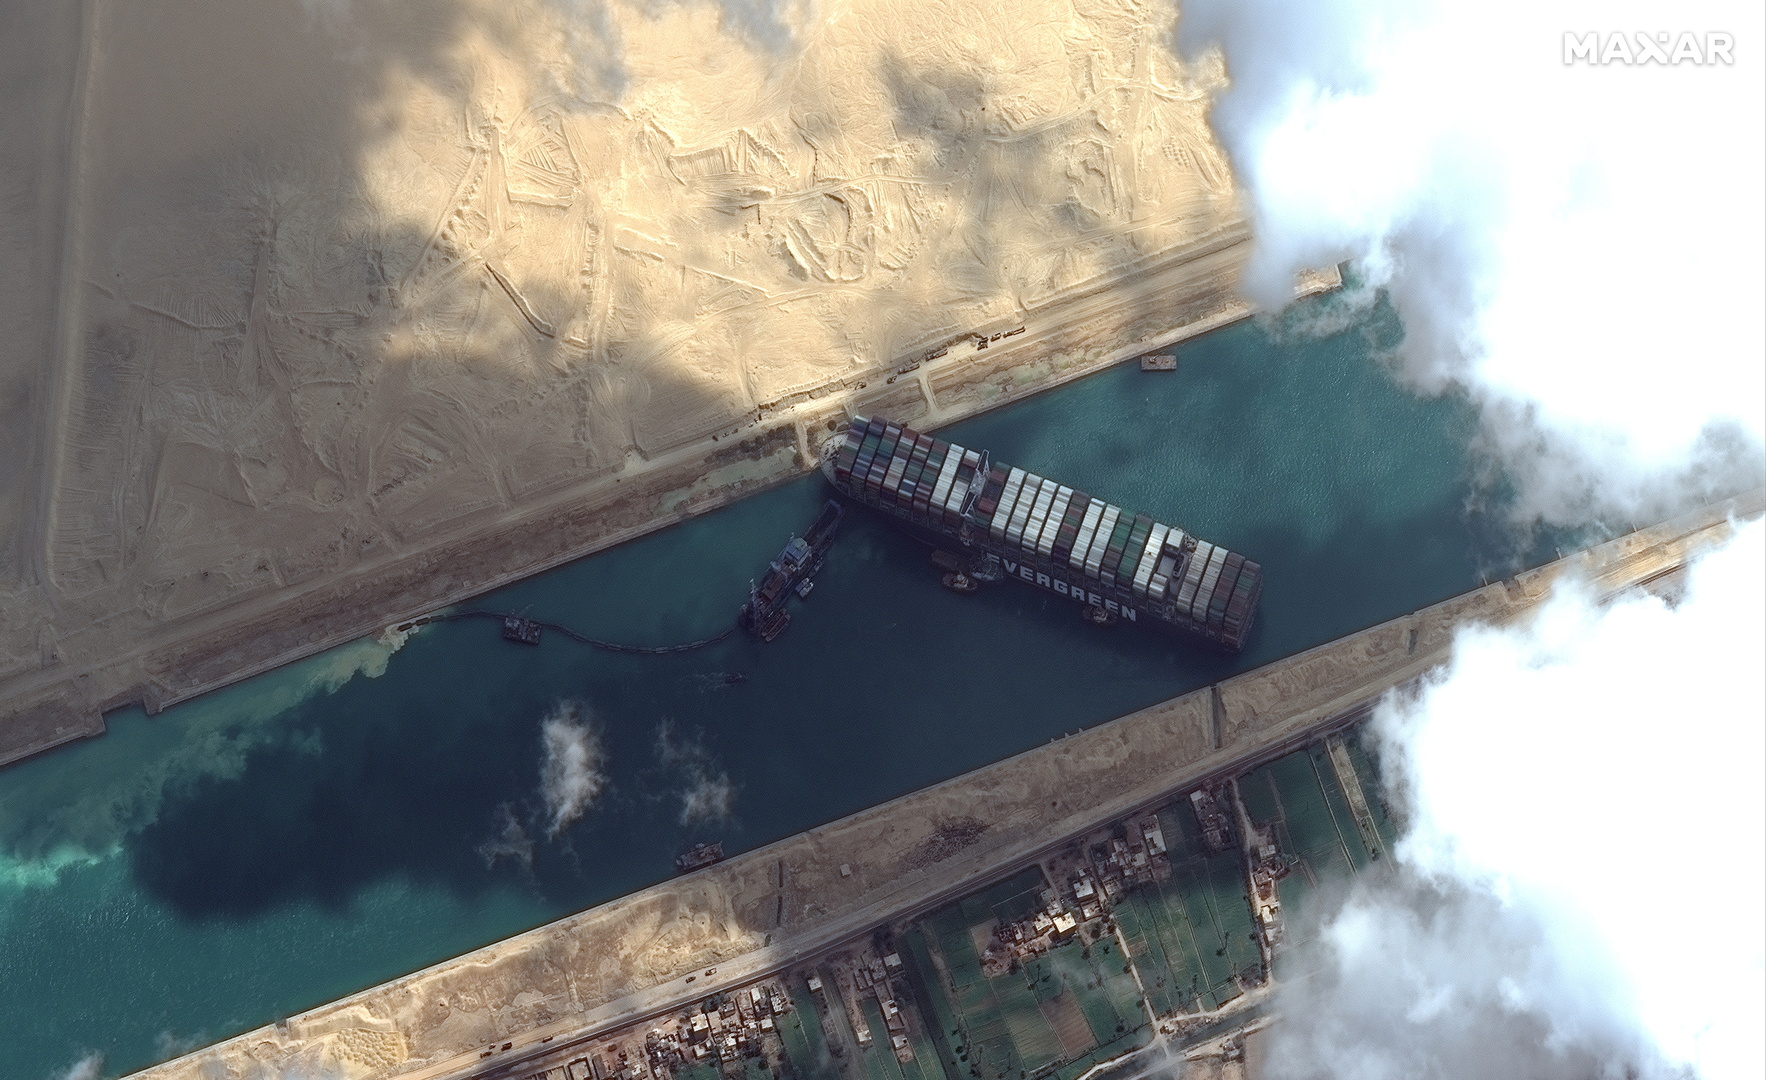 إعلام أمريكي: البحرية الأمريكية سترسل فريقا إلى قناة السويس لحل مشكلة السفينة العالقة